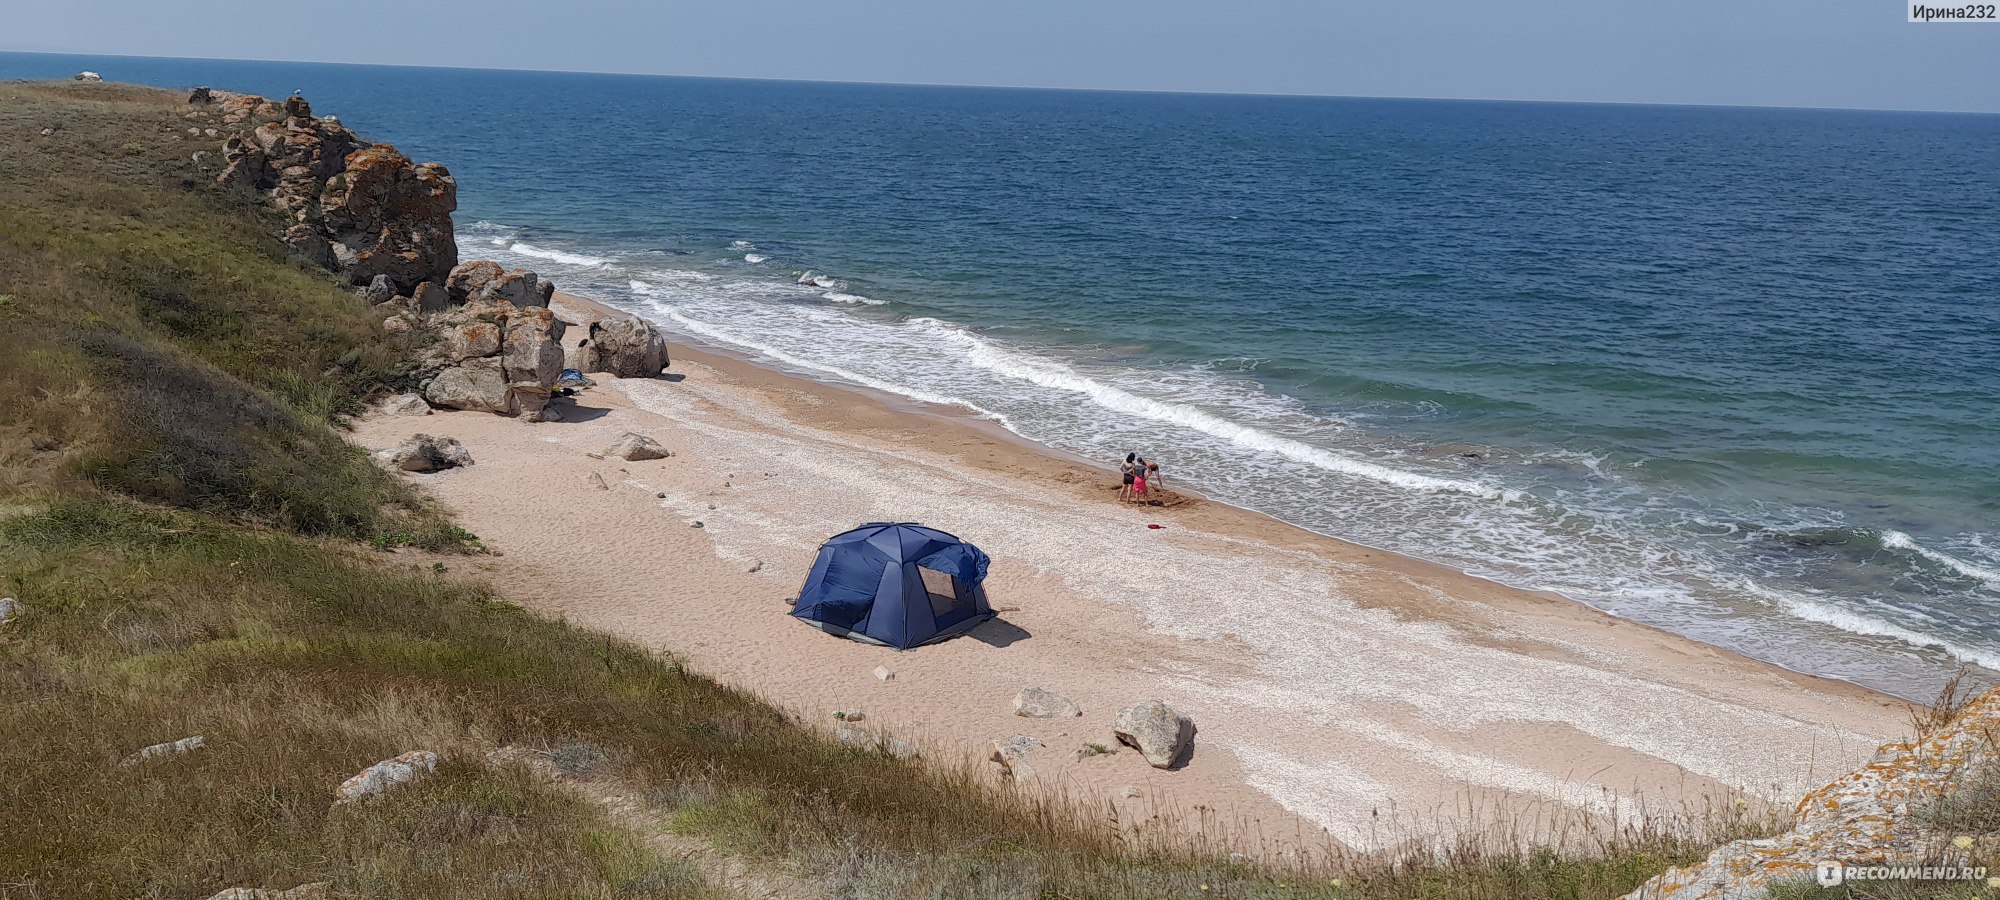 Генеральский ракушечный пляж Крым